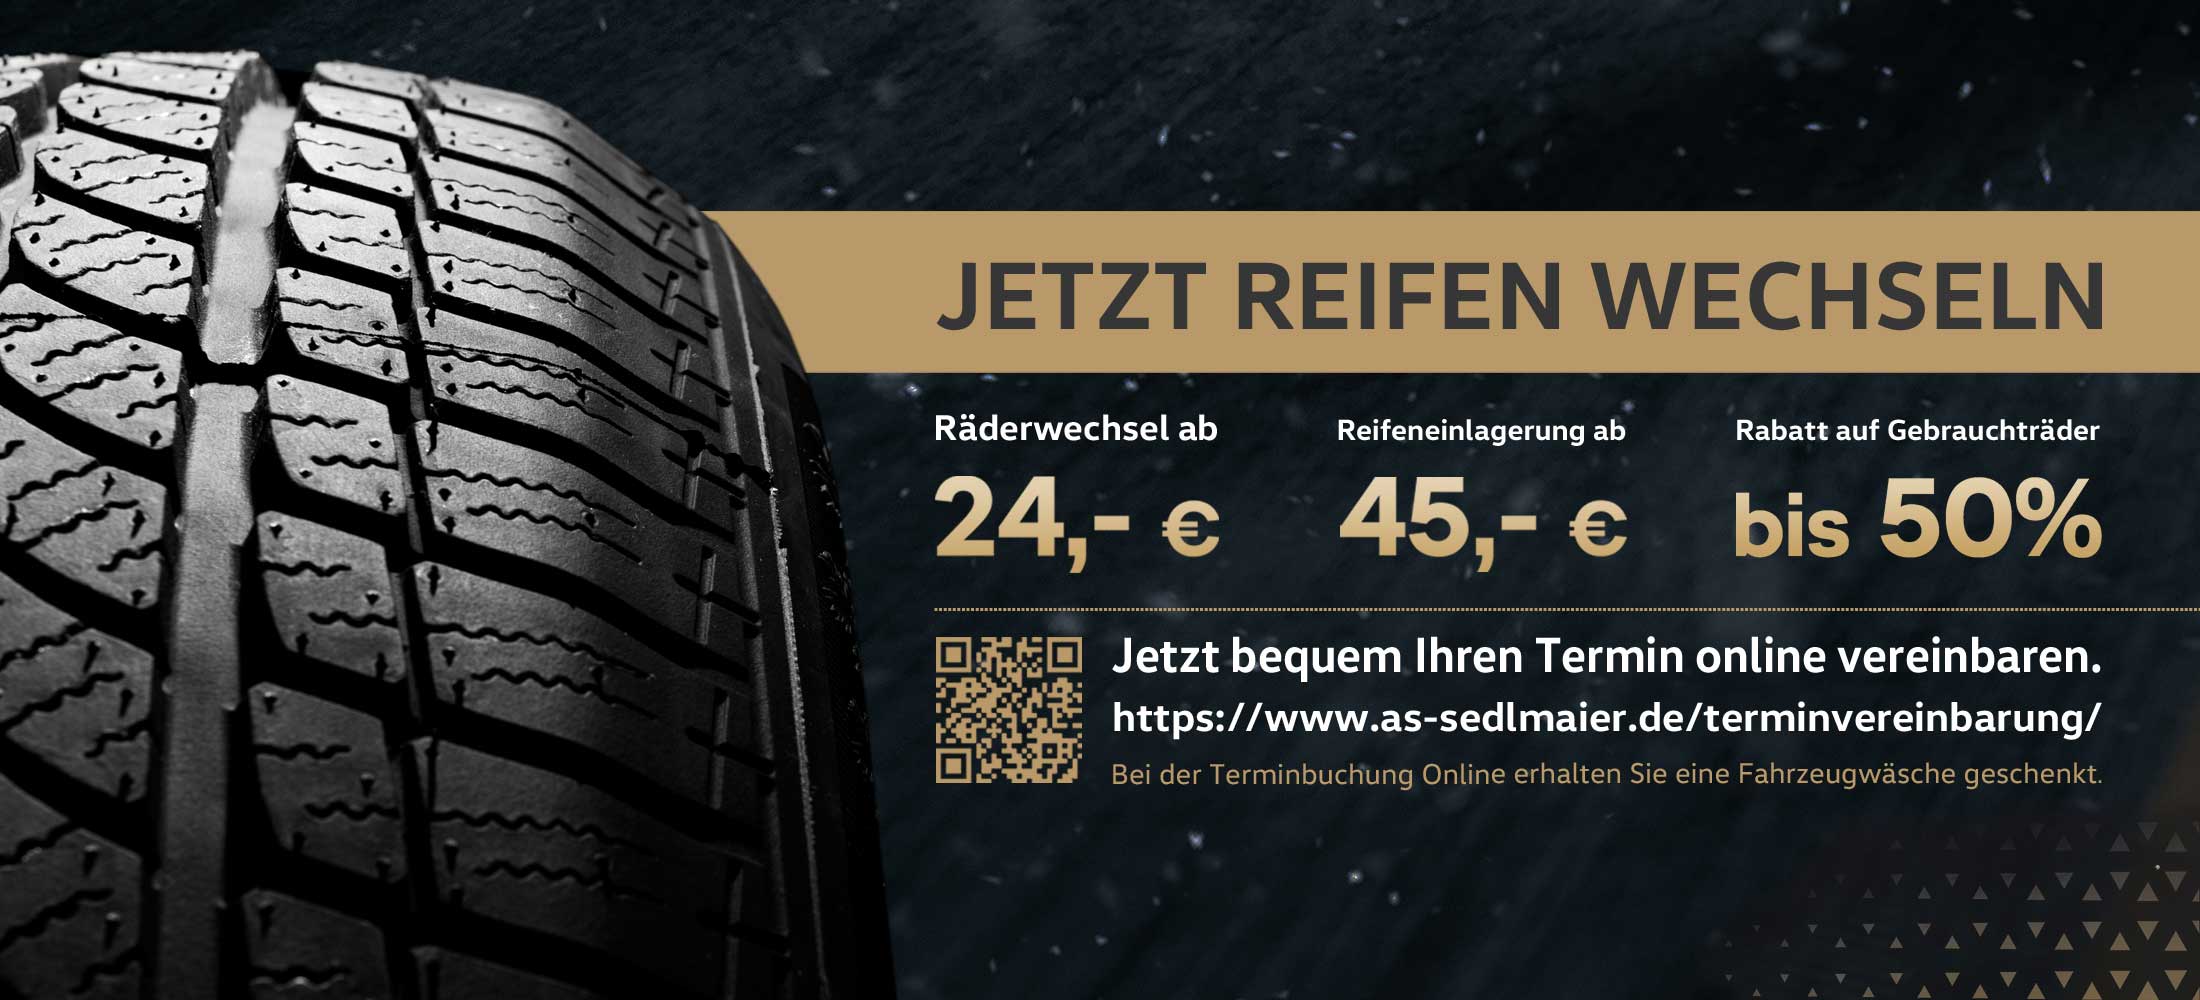 Infografik zum Räderwechsel Samstag von Autohaus Sedlmaier in Eching-Weixerau